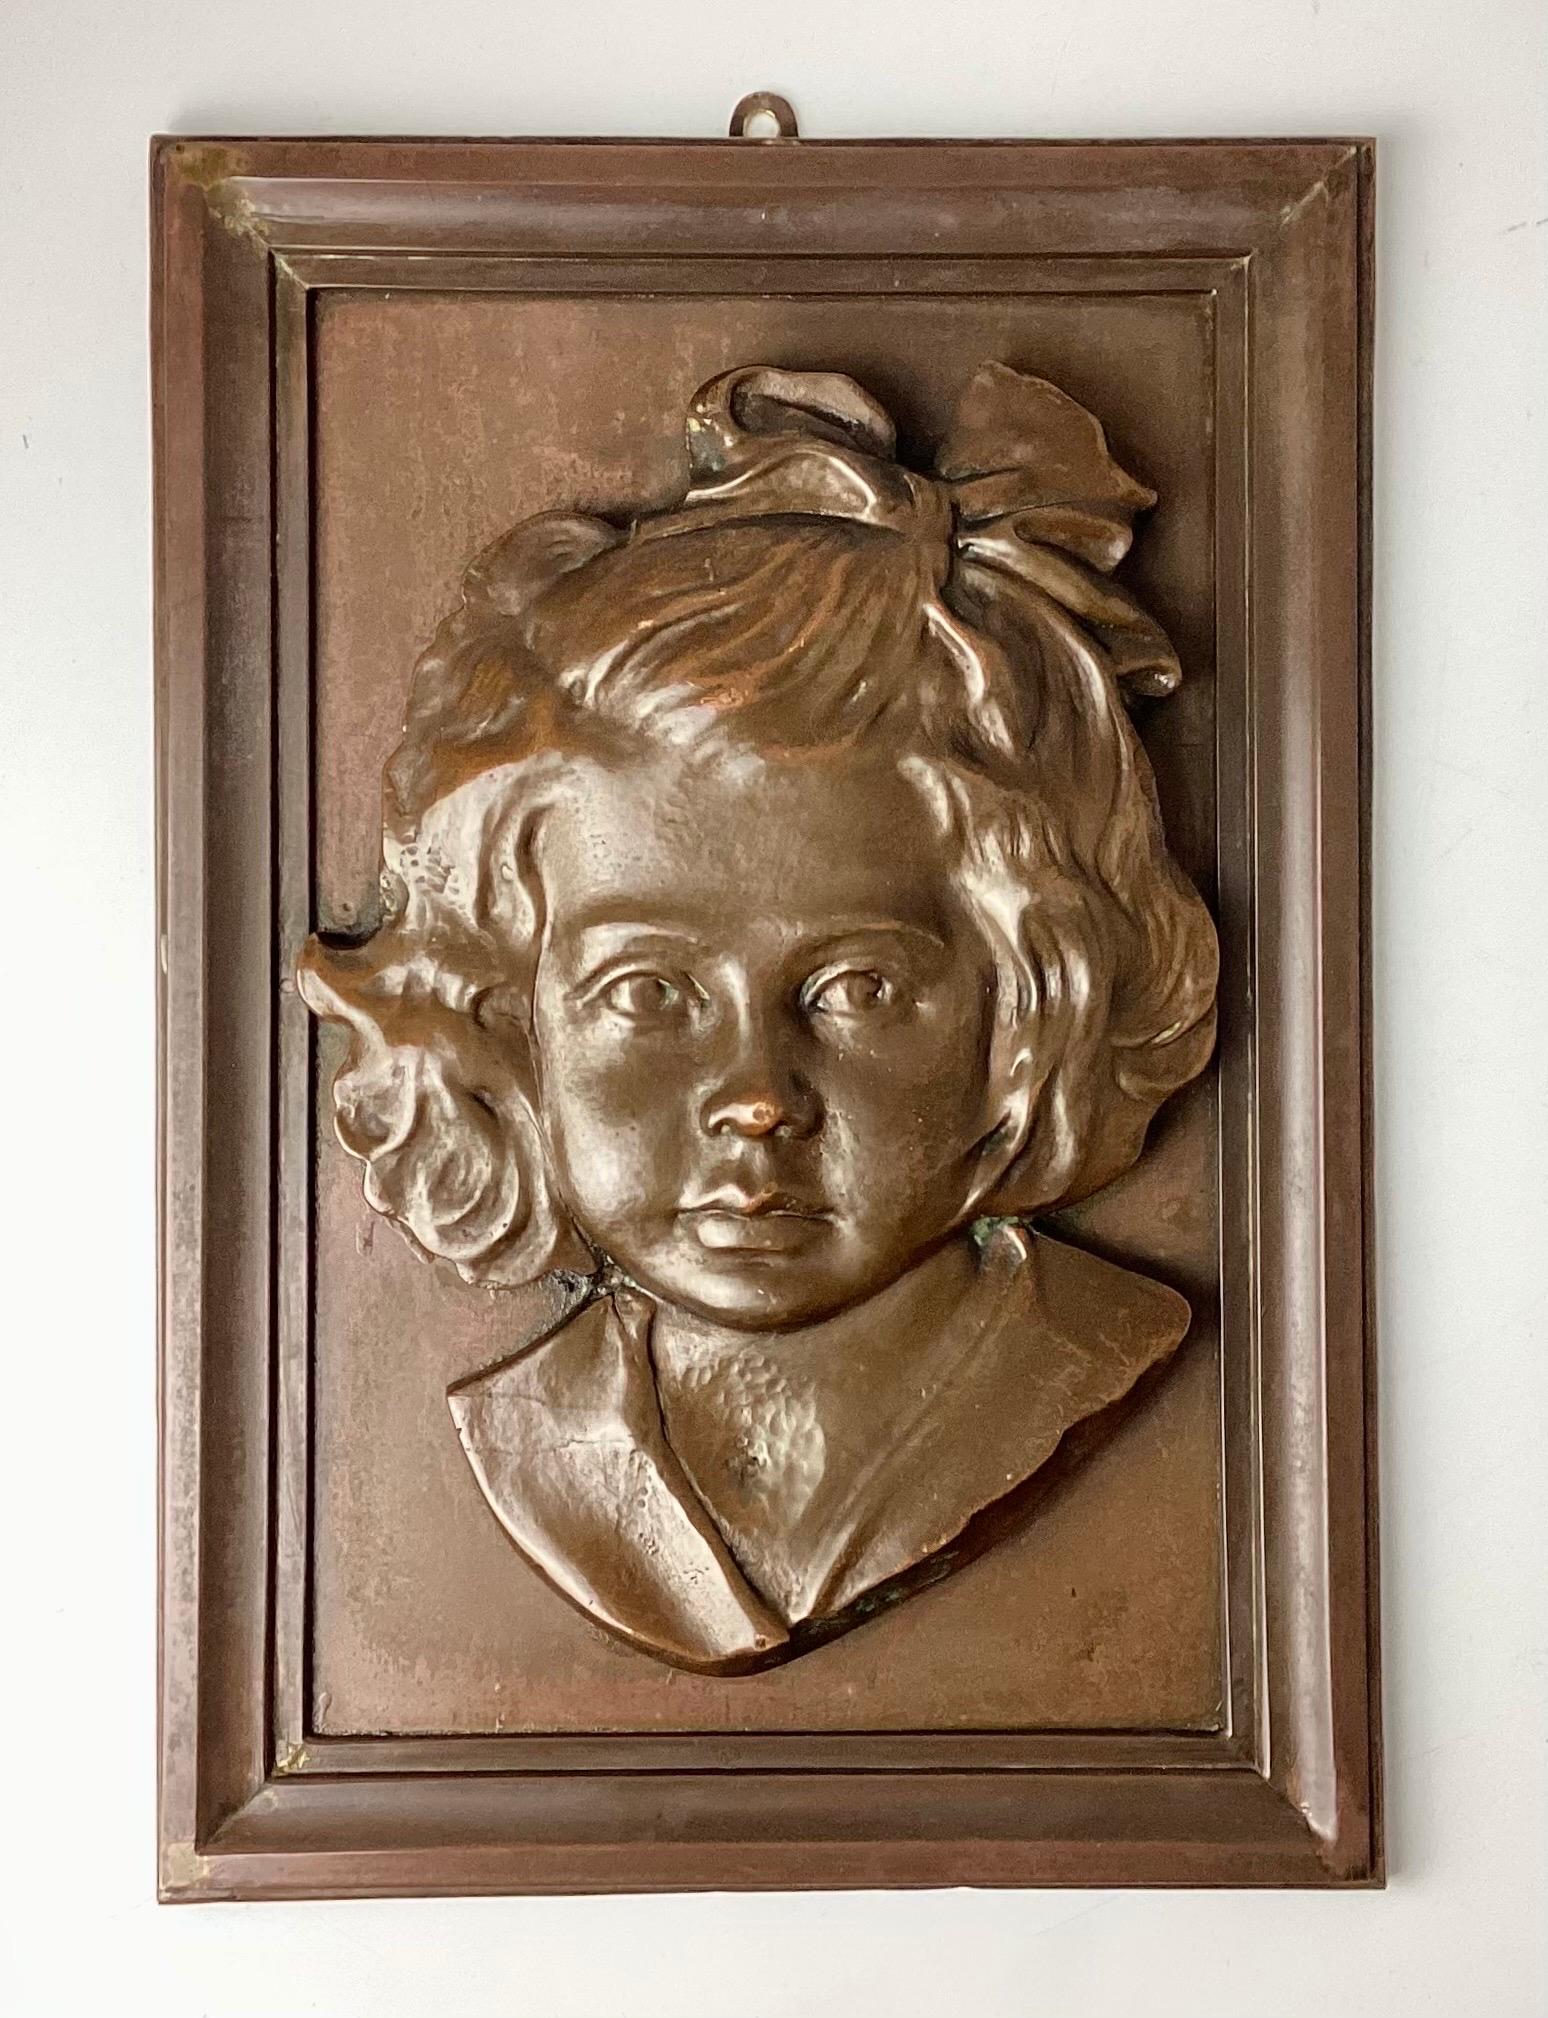 Plaque en bronze représentant un portrait d'une jeune fille. Elle est fabriquée en bronze et montée sur un cadre en bronze. Pas de marquage. Bien joué. Le crochet a été ajouté et n'est pas inclus dans les mesures.